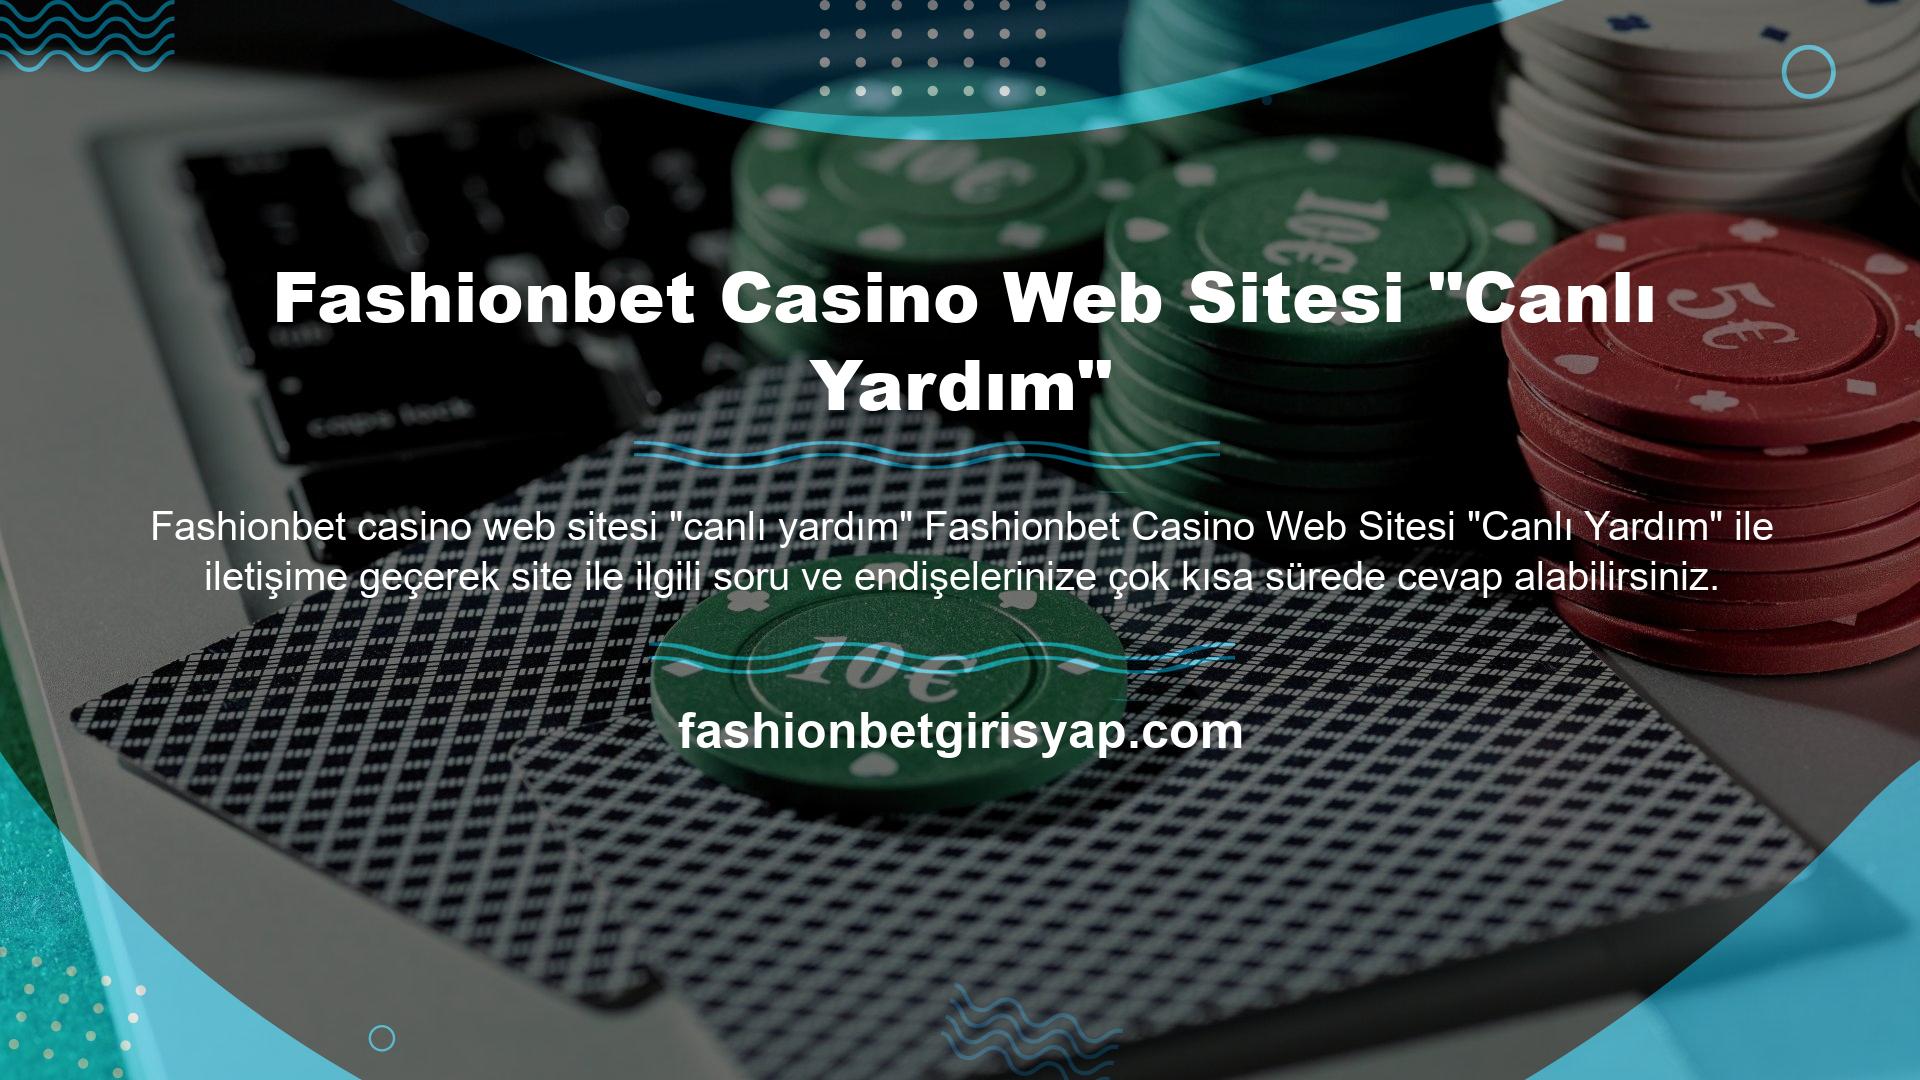 Fashionbet, çevrimiçi oyun siteleri ve casinonun üyelerine lisanslama hizmetleri sunmaktadır